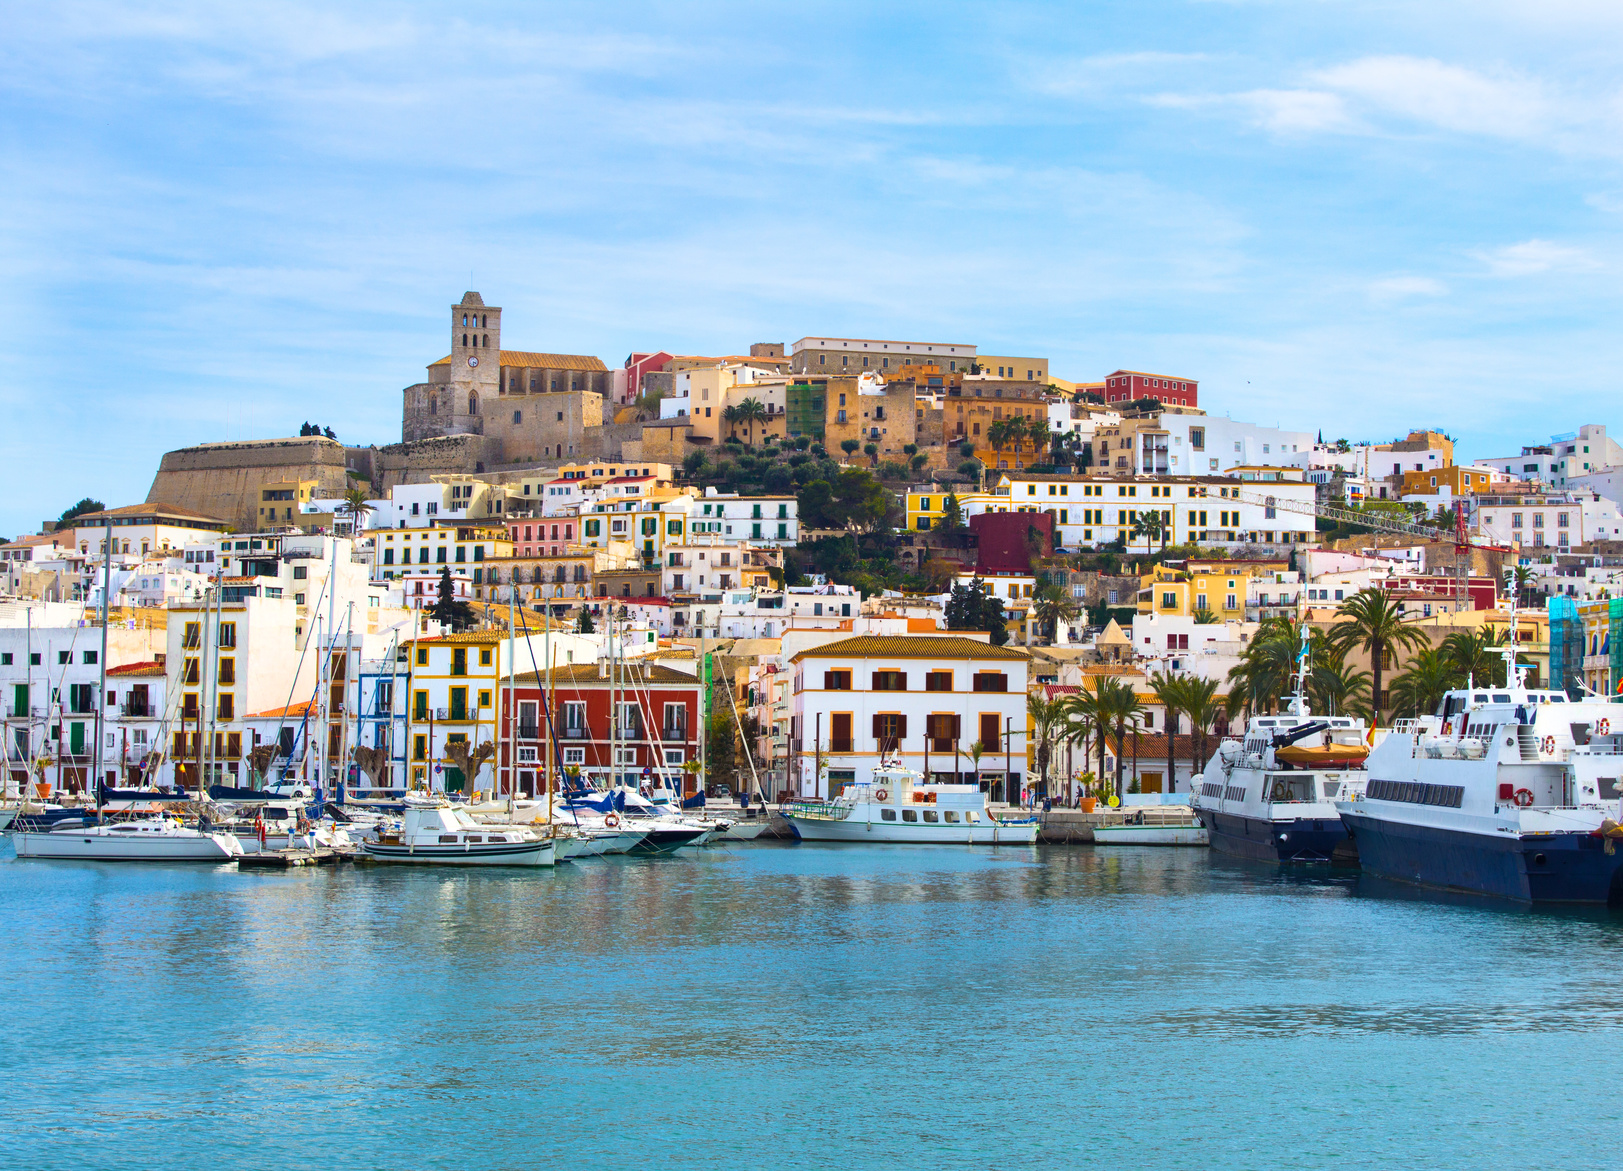 Ibiza Town - Sailing at the party hotspot